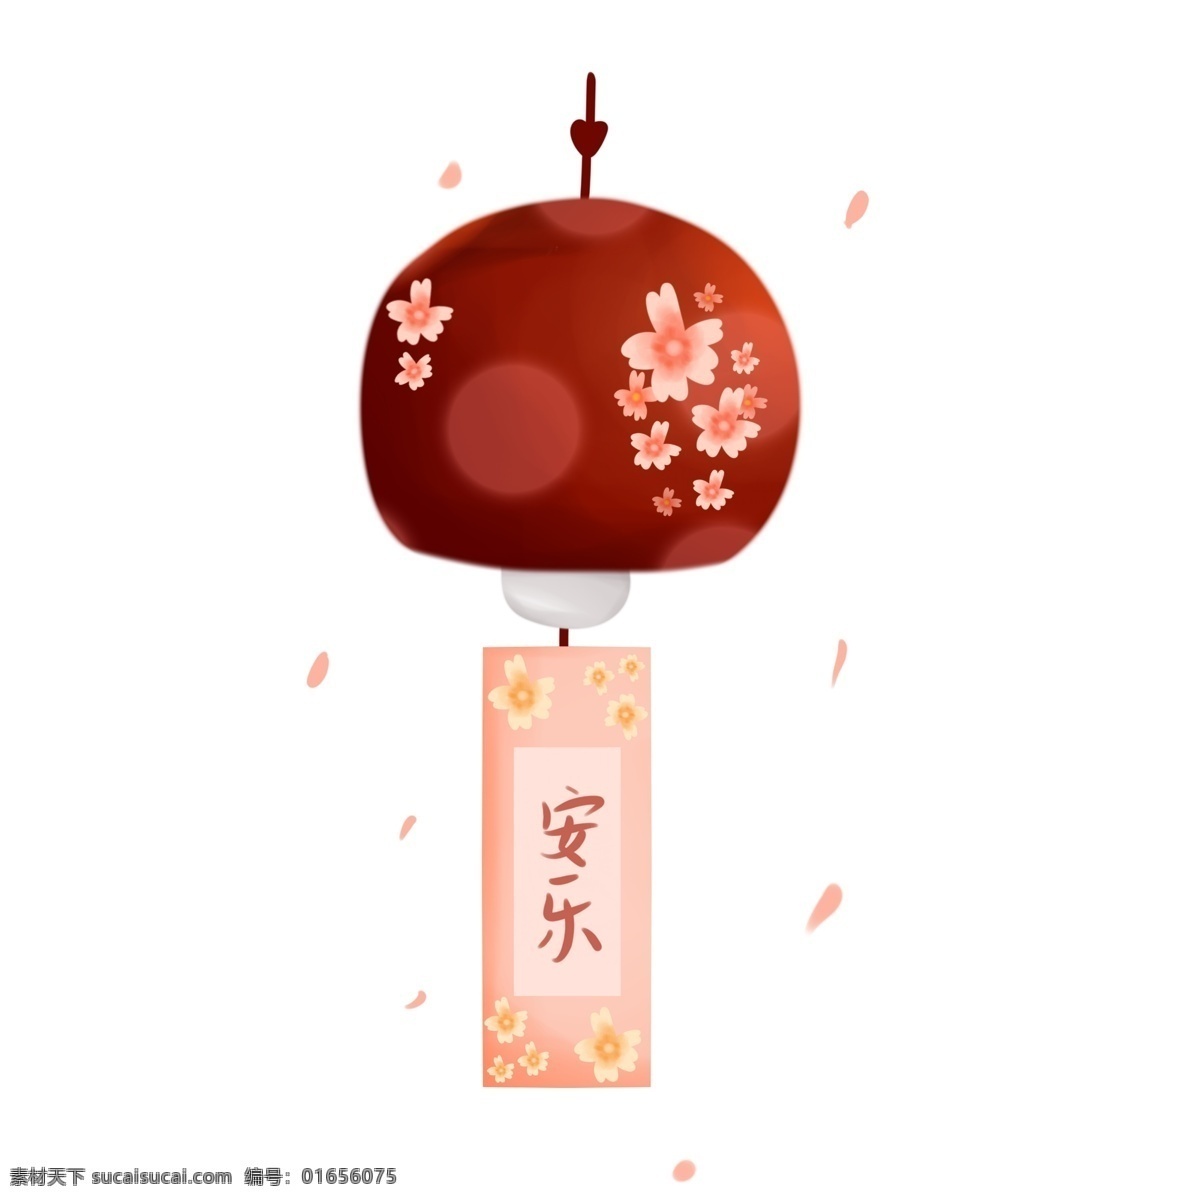 日式 卧室 装饰 樱花 风铃 日本 和风 家居 安乐 祝福 玻璃 花瓣 小清新 复古 可爱